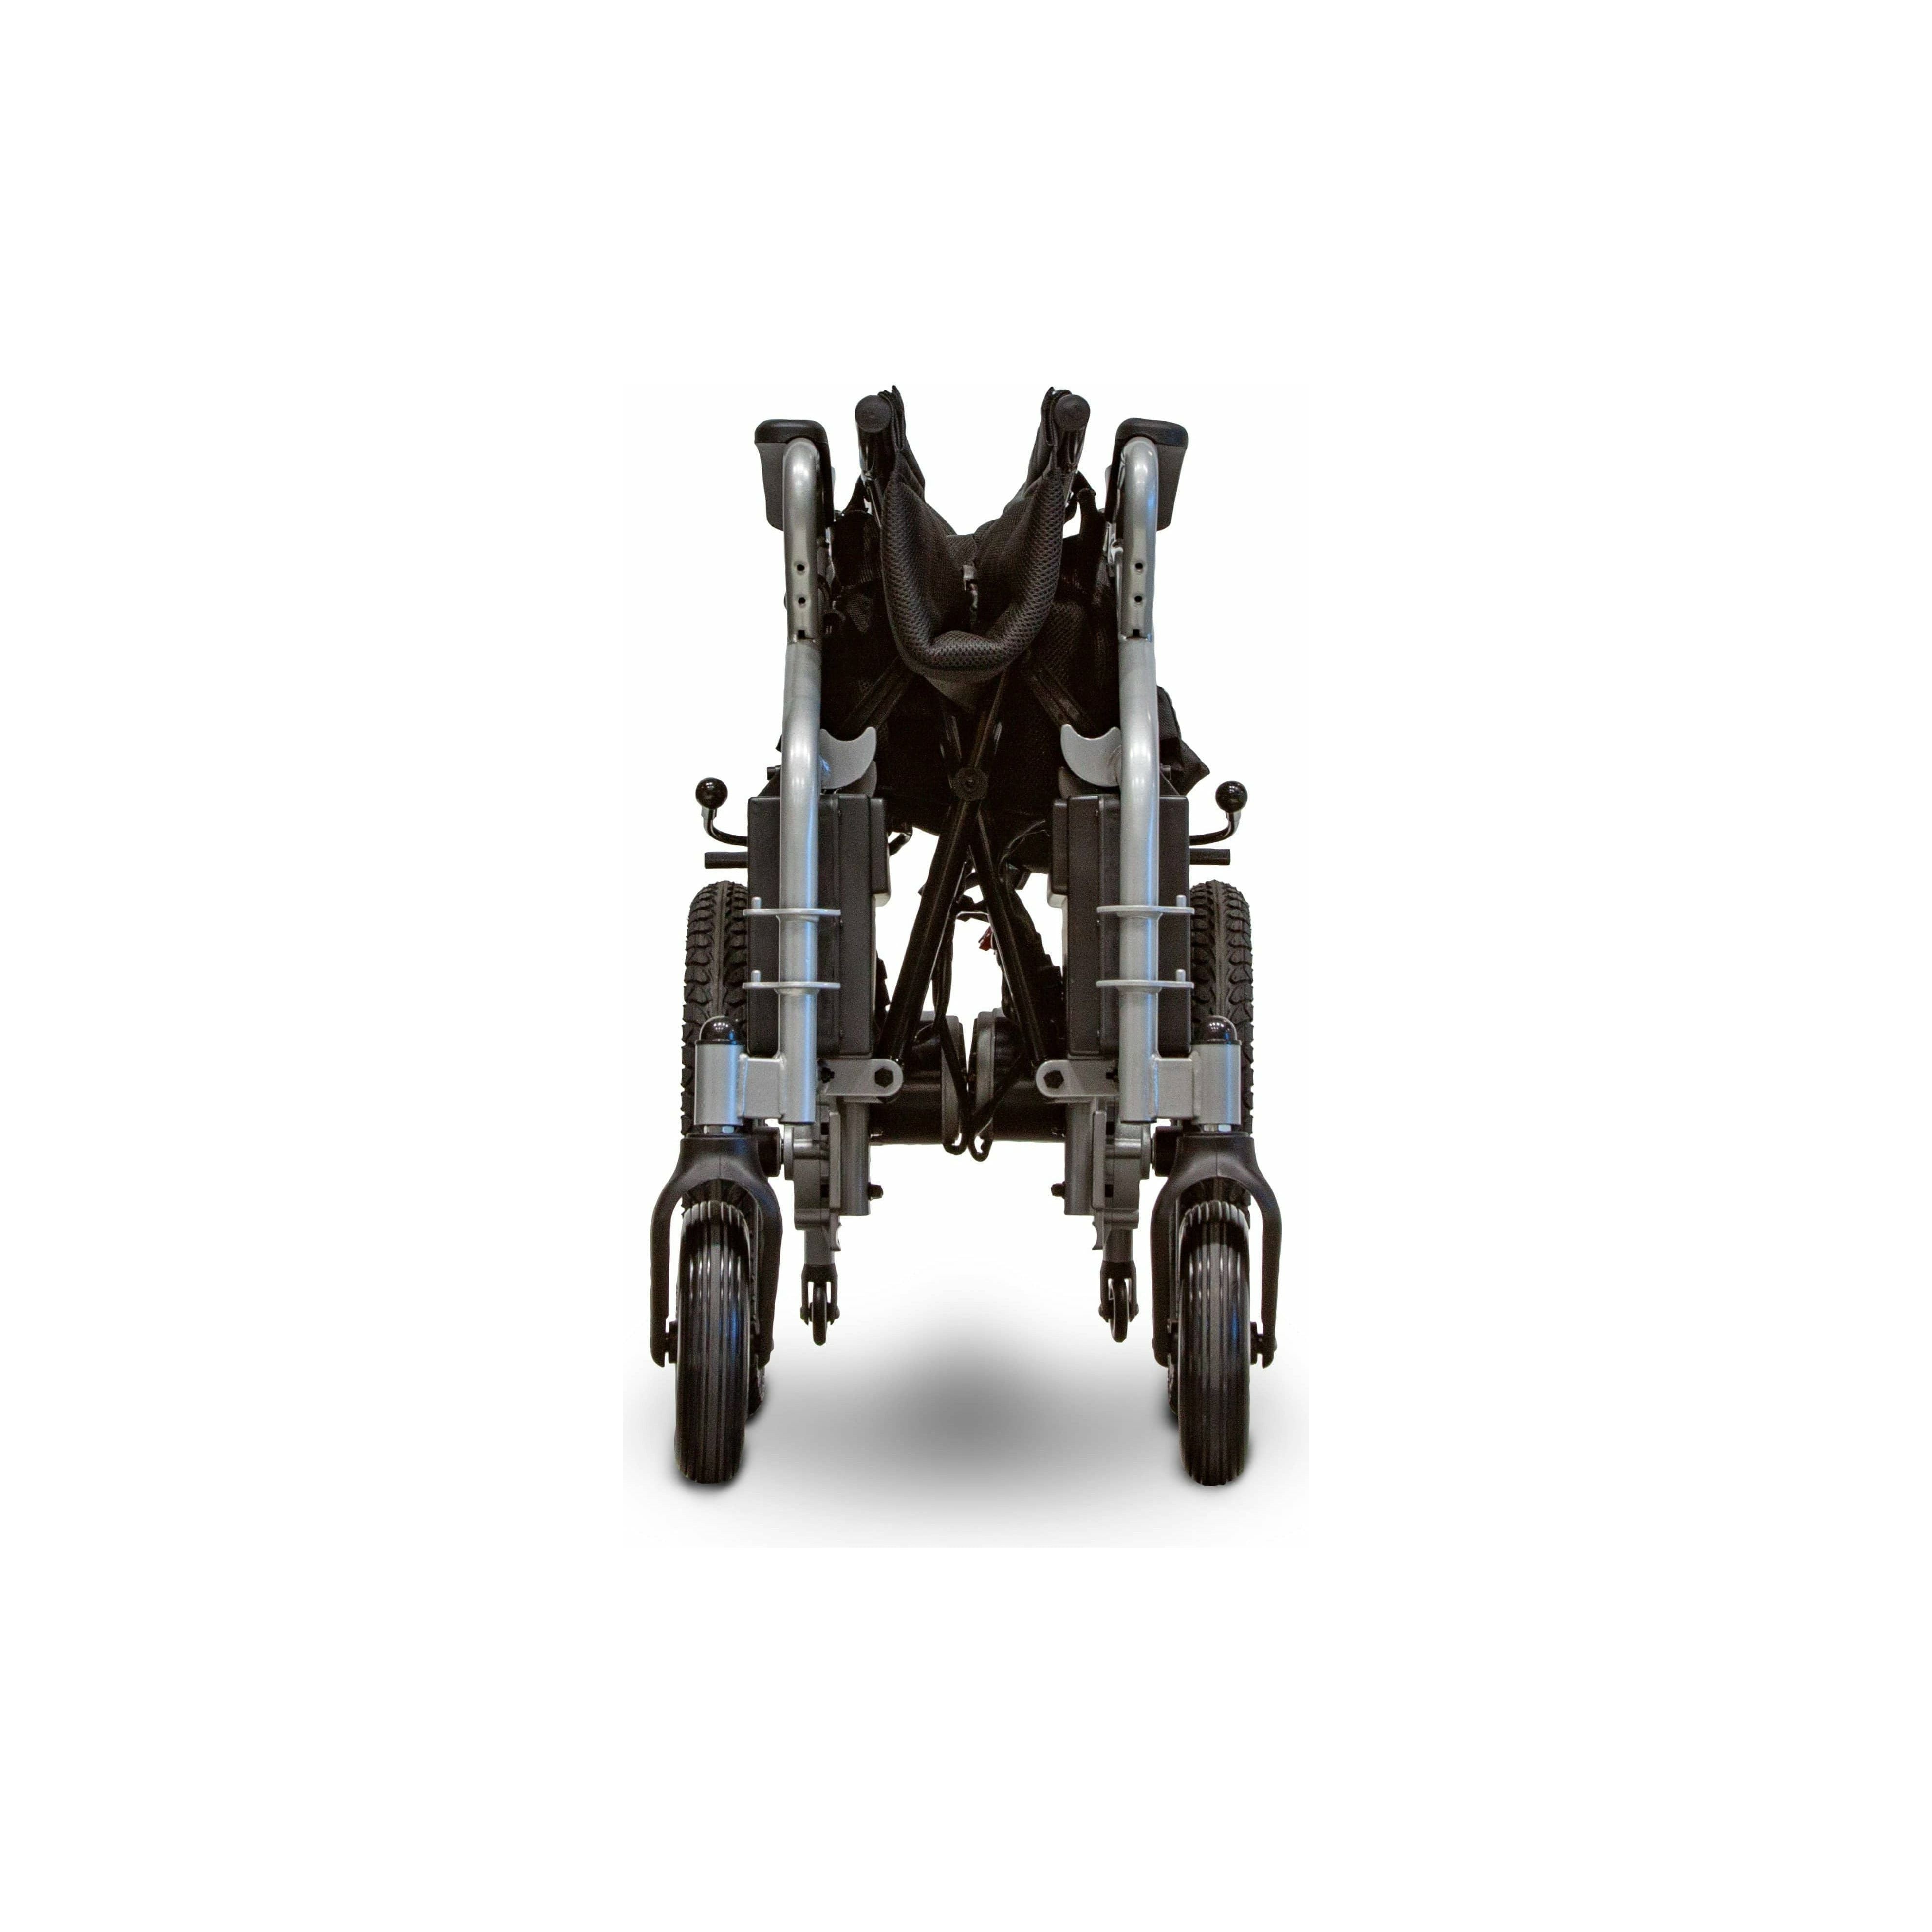 EWheels EW-M30 12V/20Ah 250W Folding Electric Wheelchair